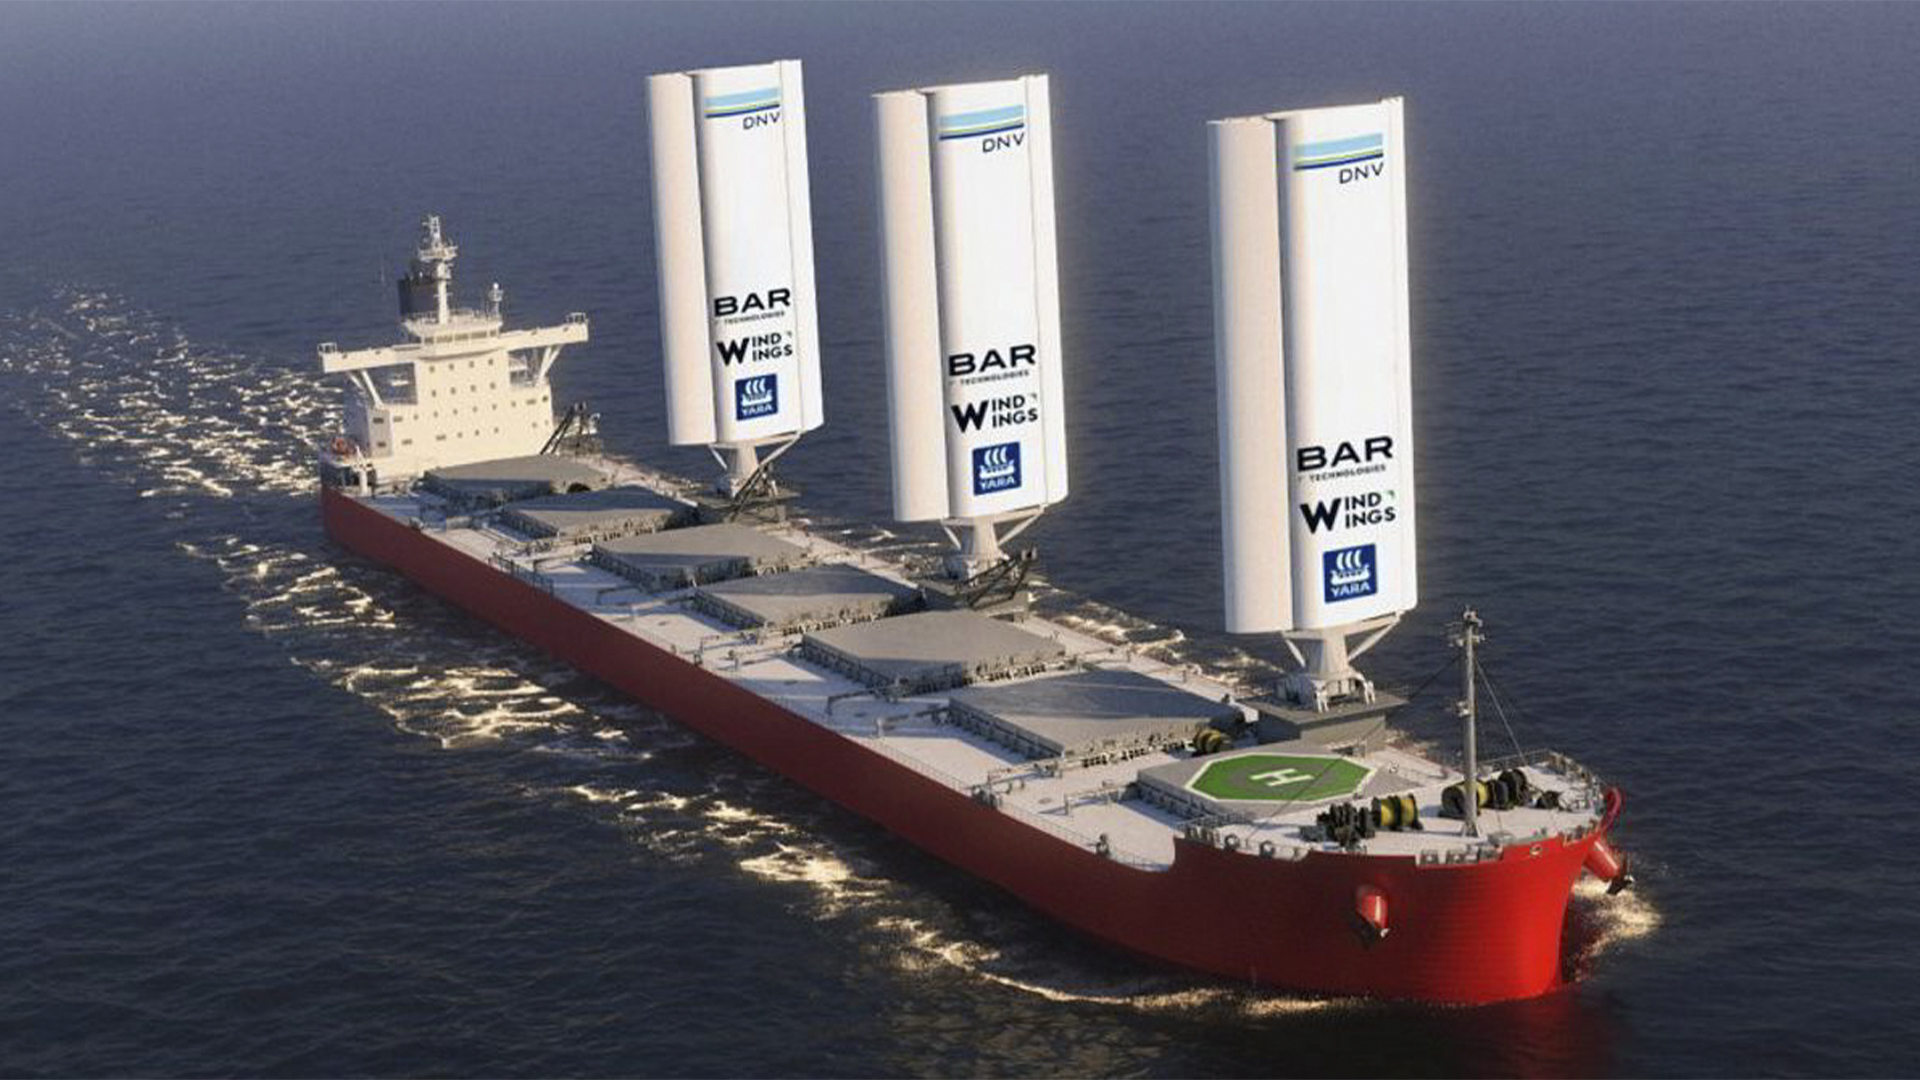 Empresa chinesa revela navio cargueiro com velas gigantes movidas a vento e faz viagem inaugural ao Brasil